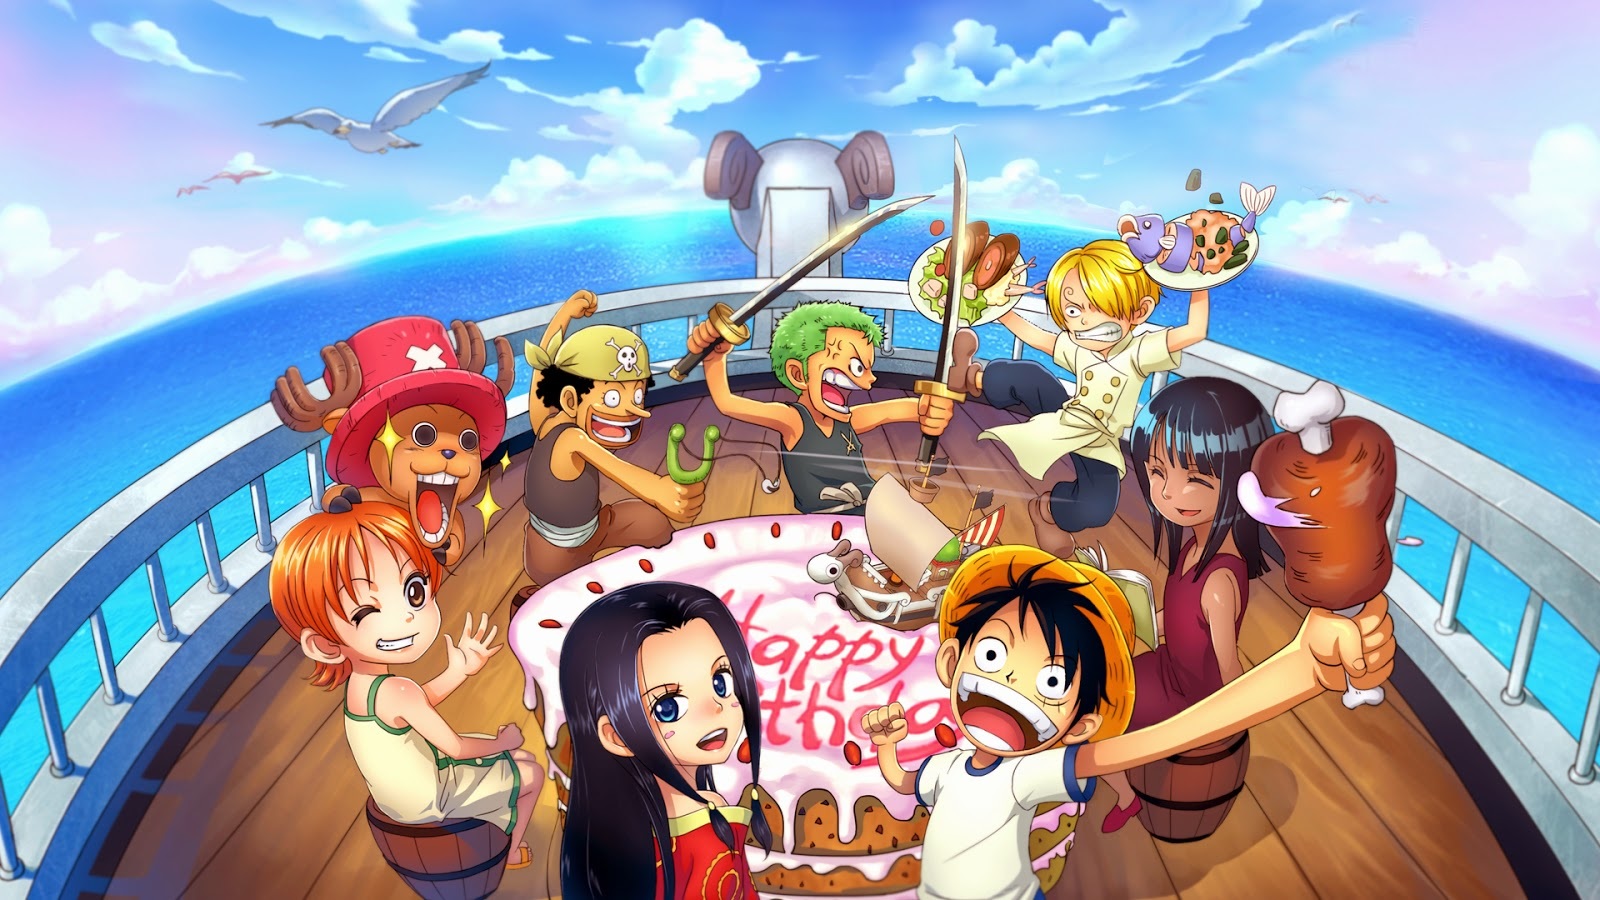 Tham gia vào một cuộc phiêu lưu đầy mạo hiểm với nhóm Straw Hat qua hình ảnh anime One Piece rực rỡ, đầy màu sắc. Hãy xem những trận chiến nảy lửa giữa những nhân vật huyền thoại trong thế giới của One Piece.